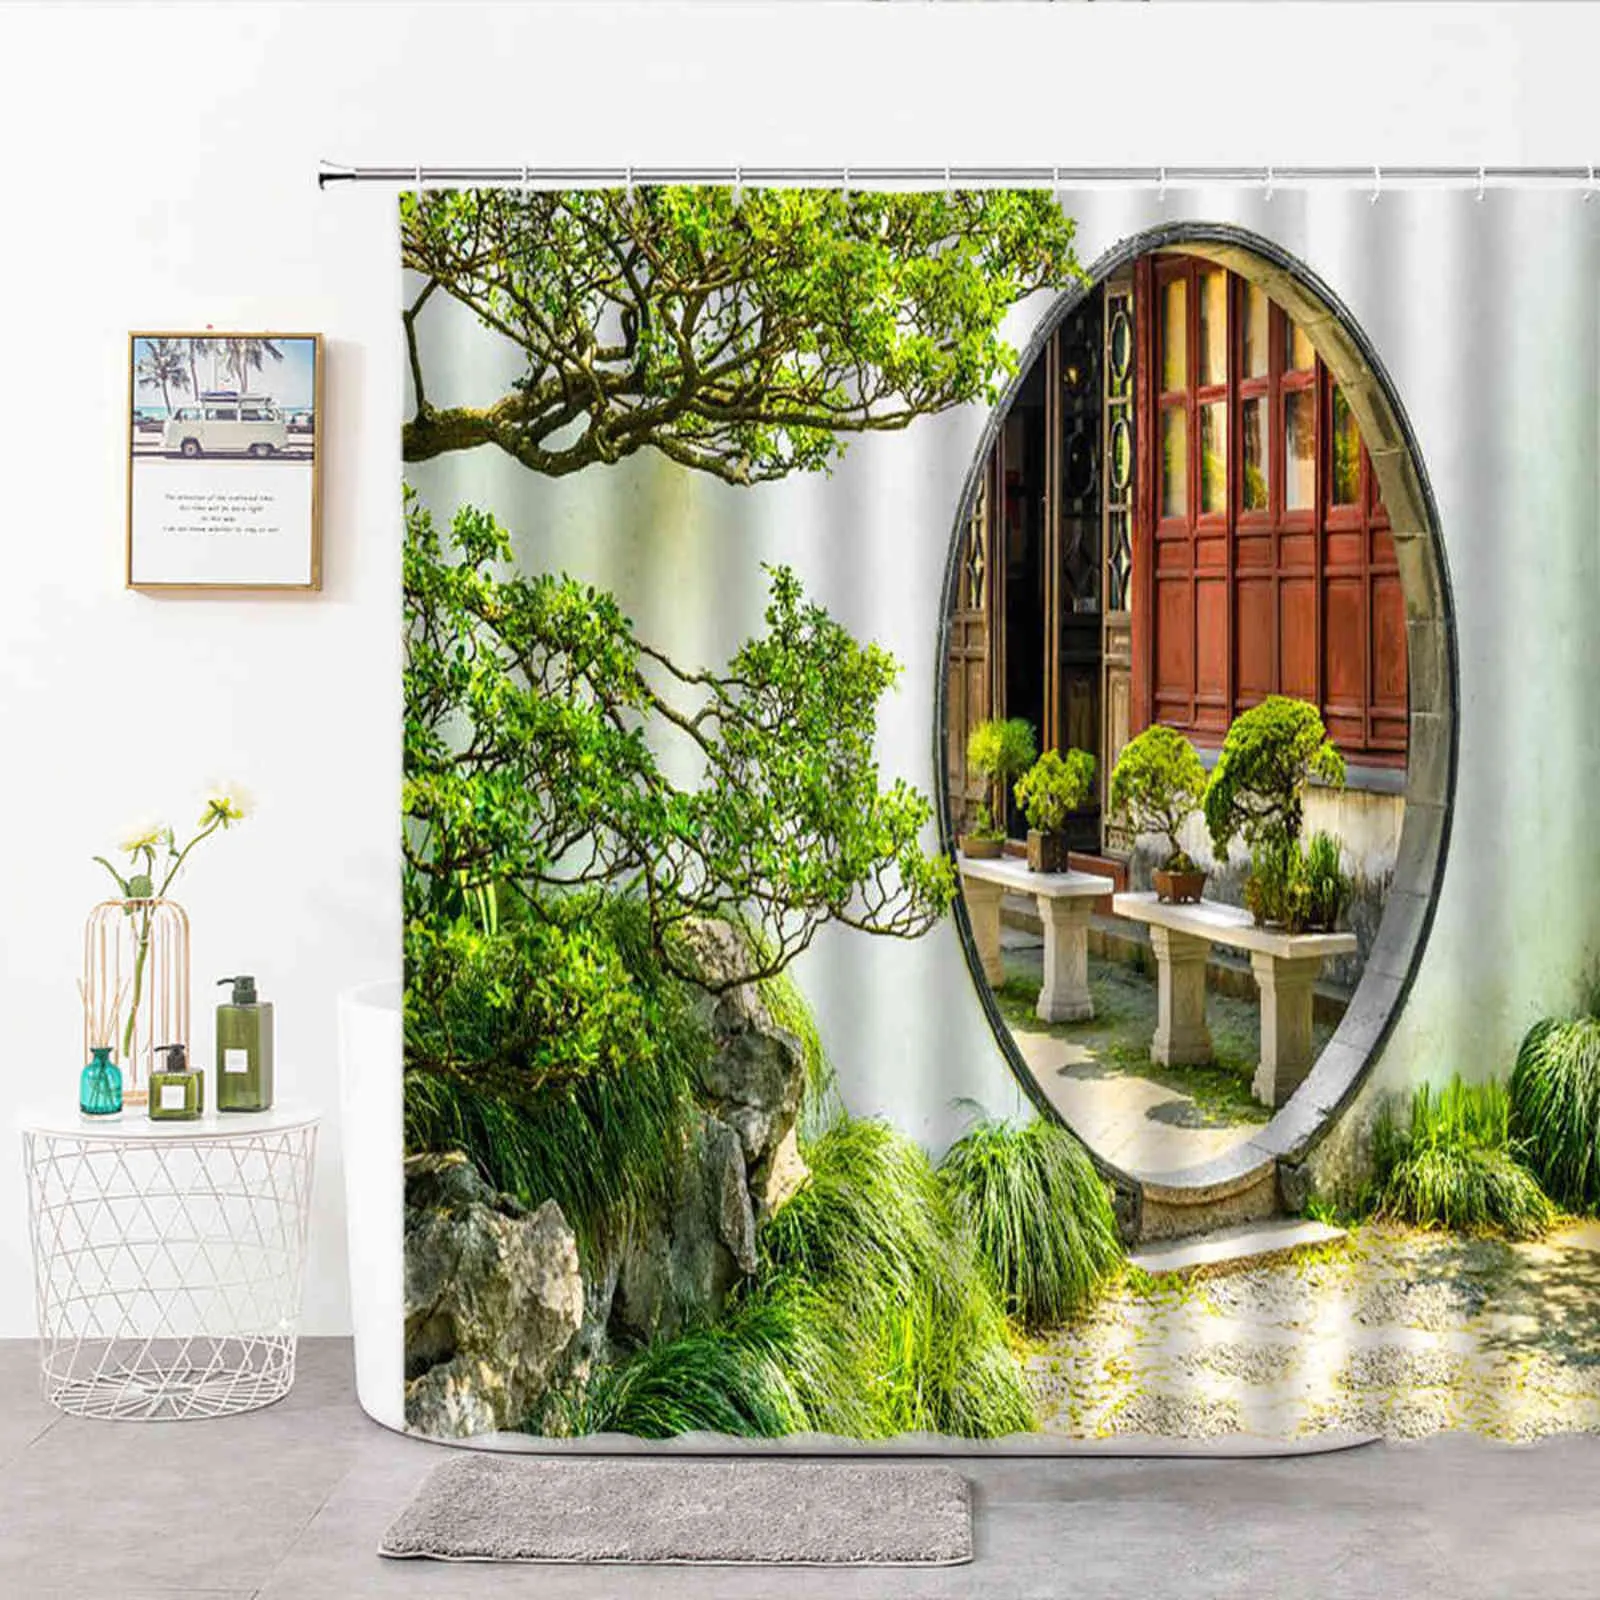 Chinês moon gate chuveiro cortinas paisagem jardim impresso banheiro cortina poliéster pano cortina de banho para decoração do banheiro 211116